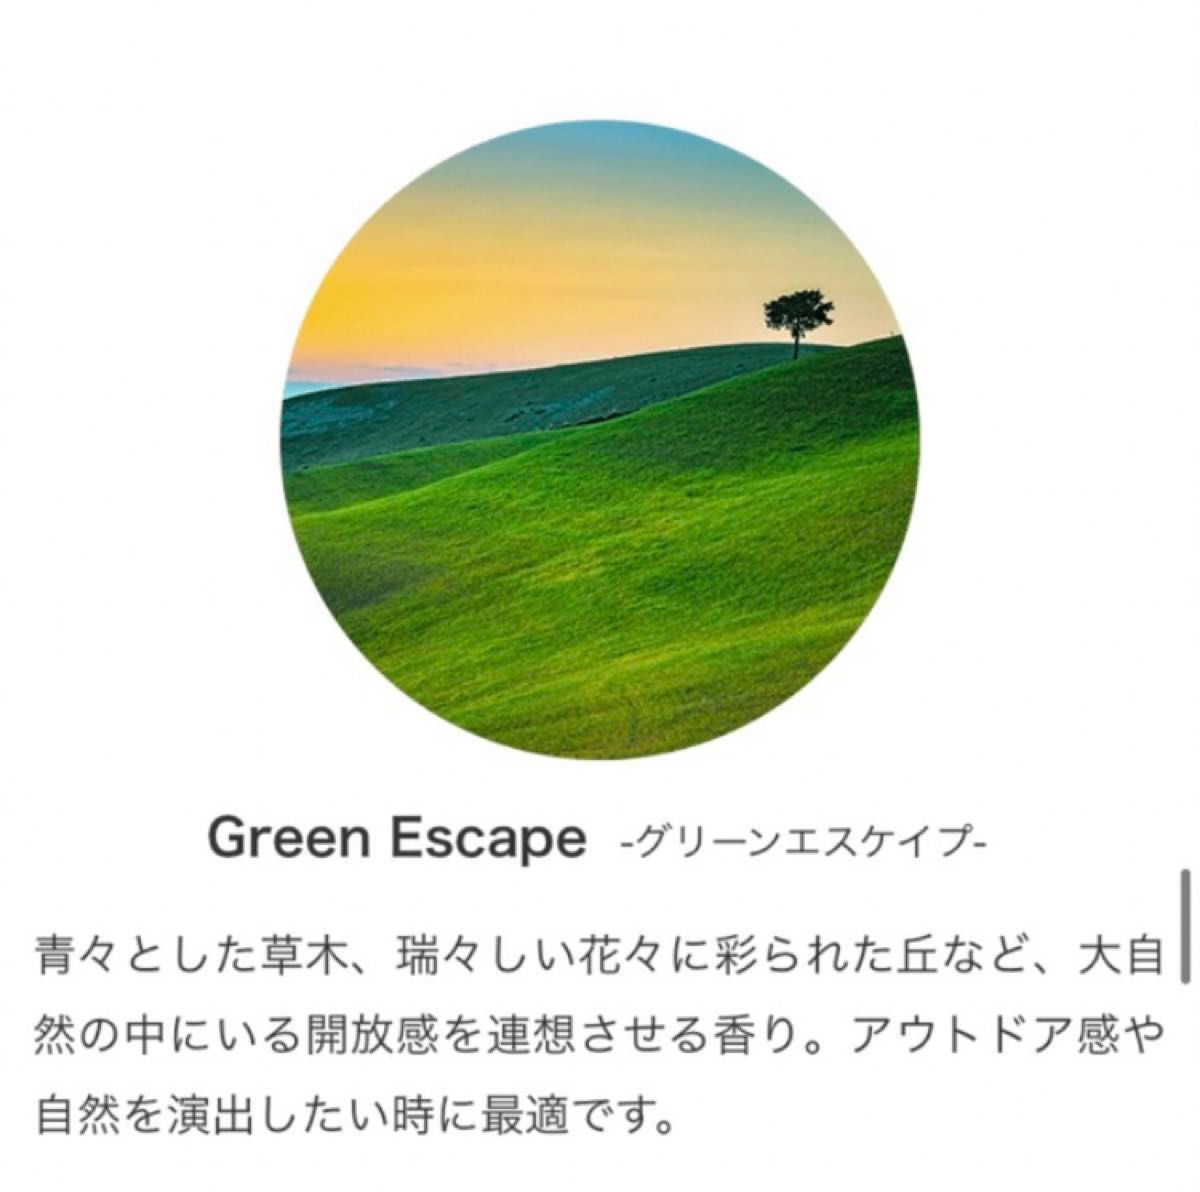  Green Escape グリーンエスケープProlitec30ml